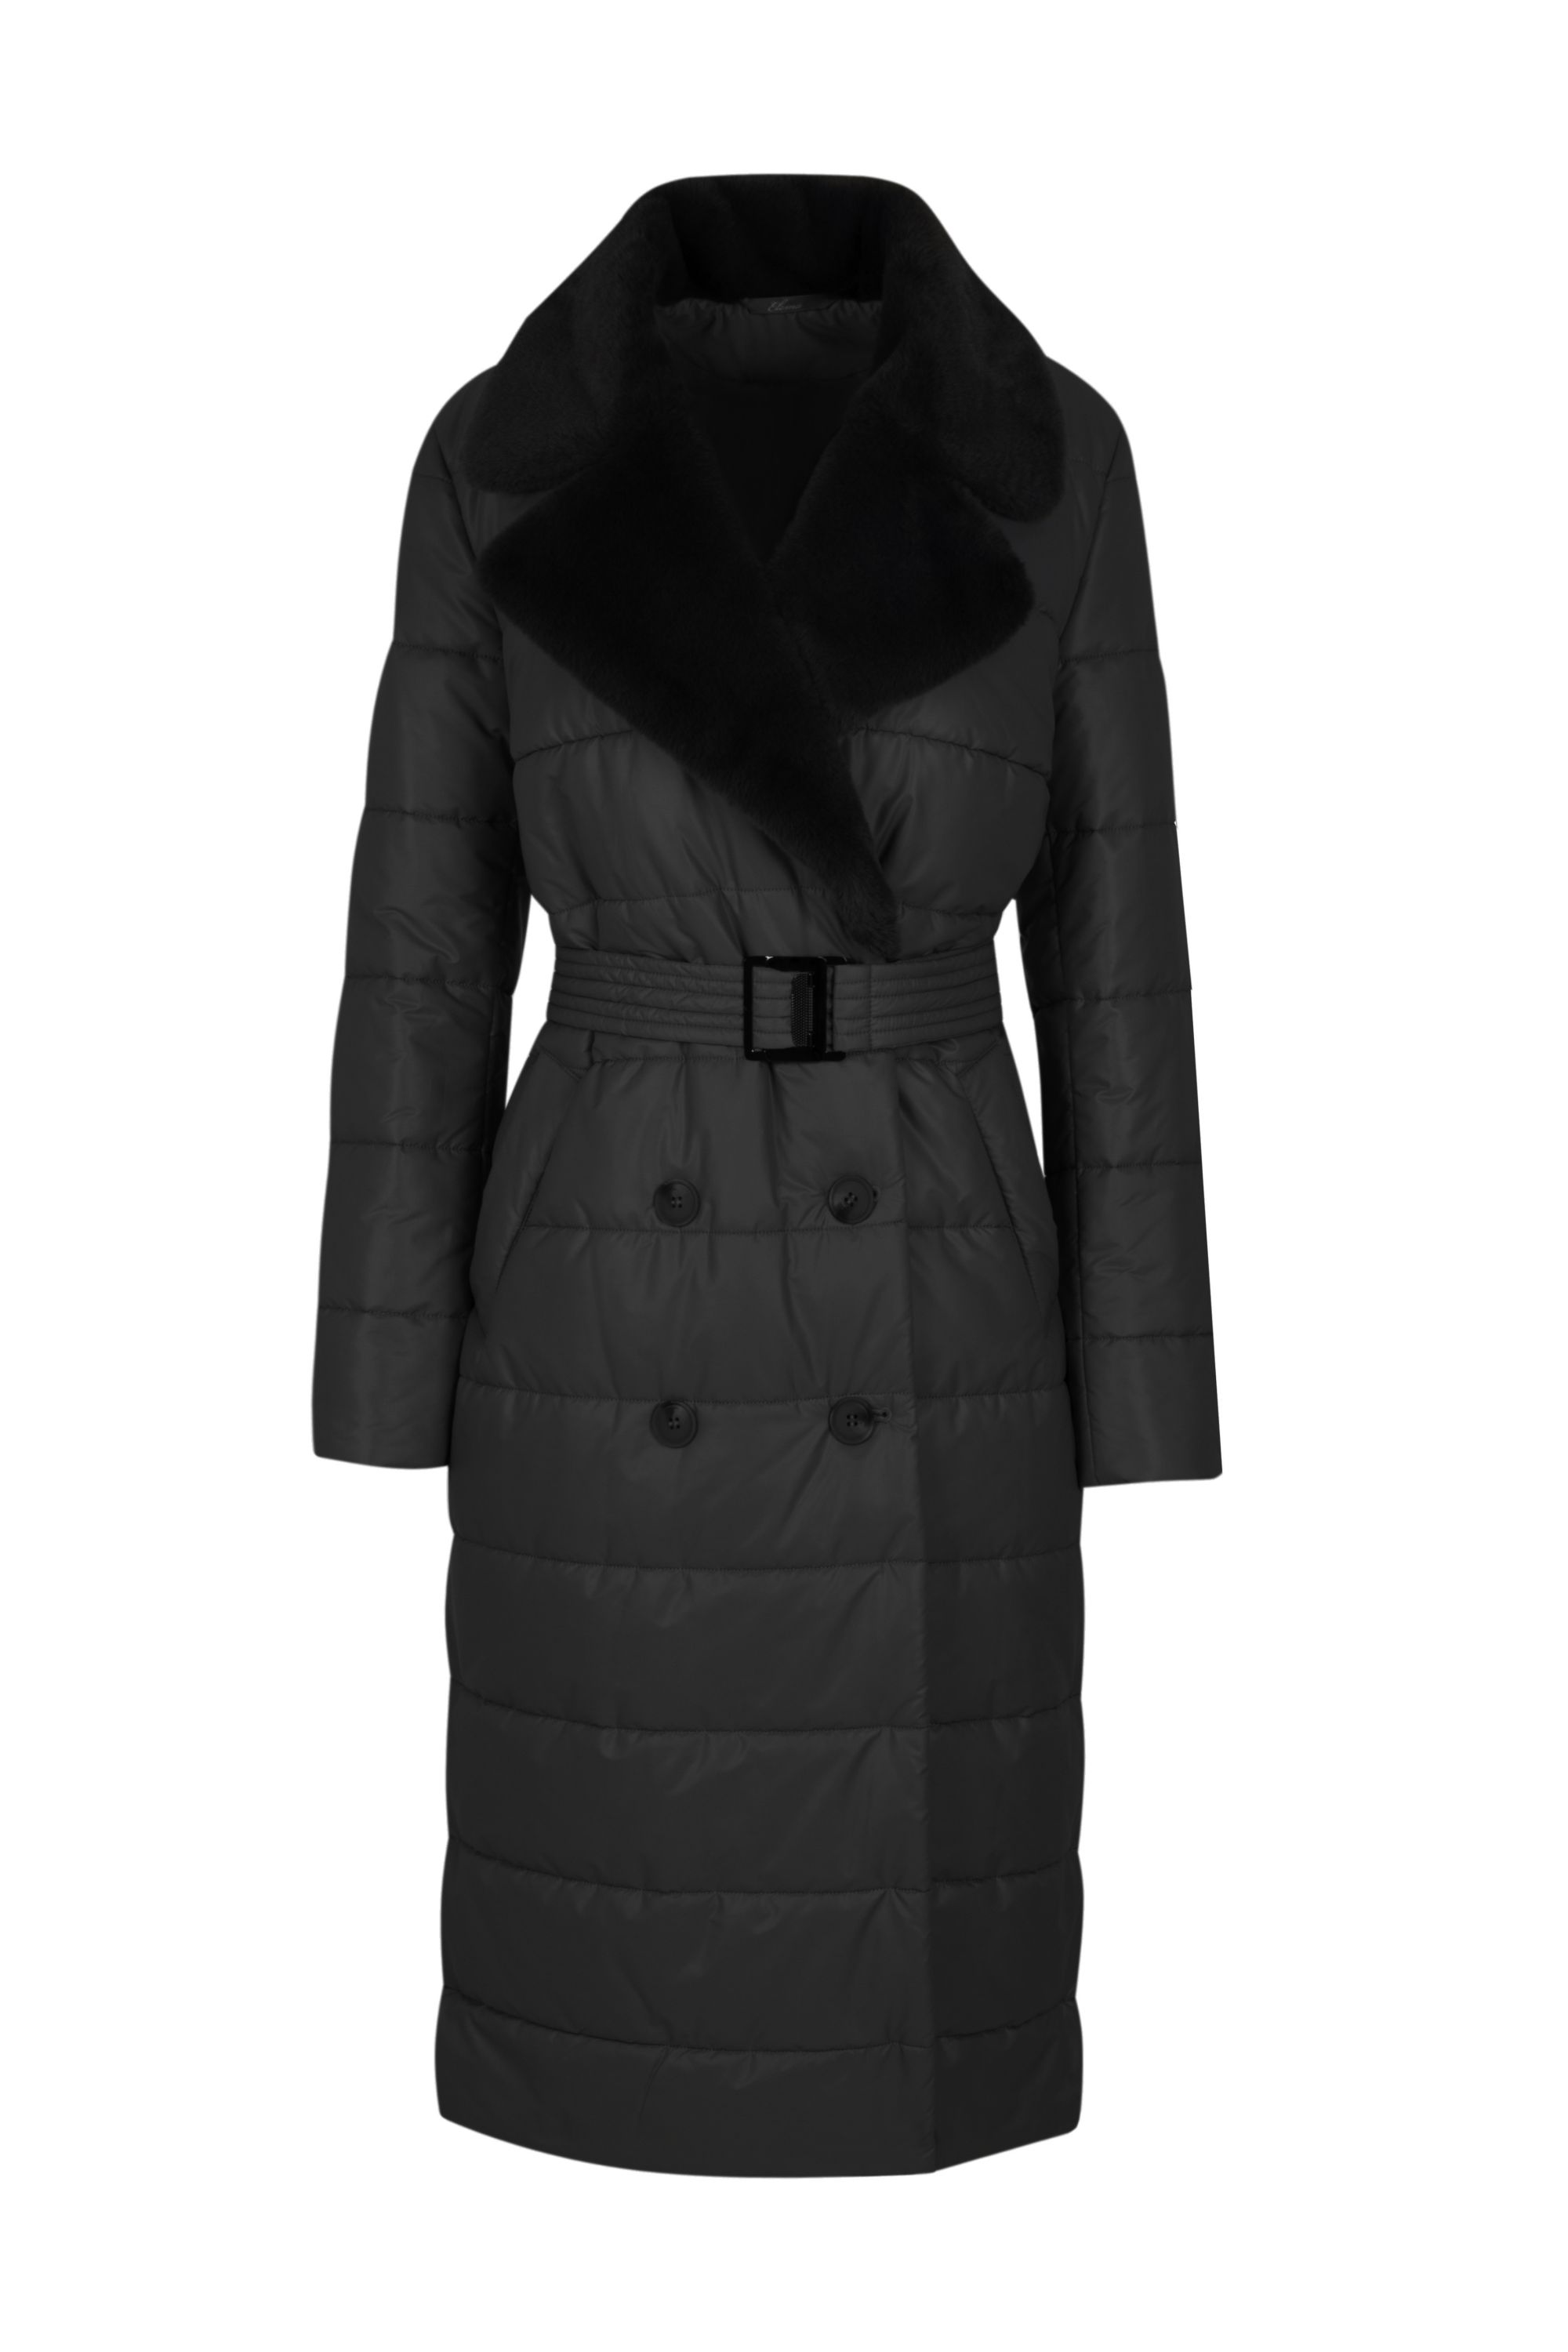 Пальто женское плащевое утепленное 5S-13038-1